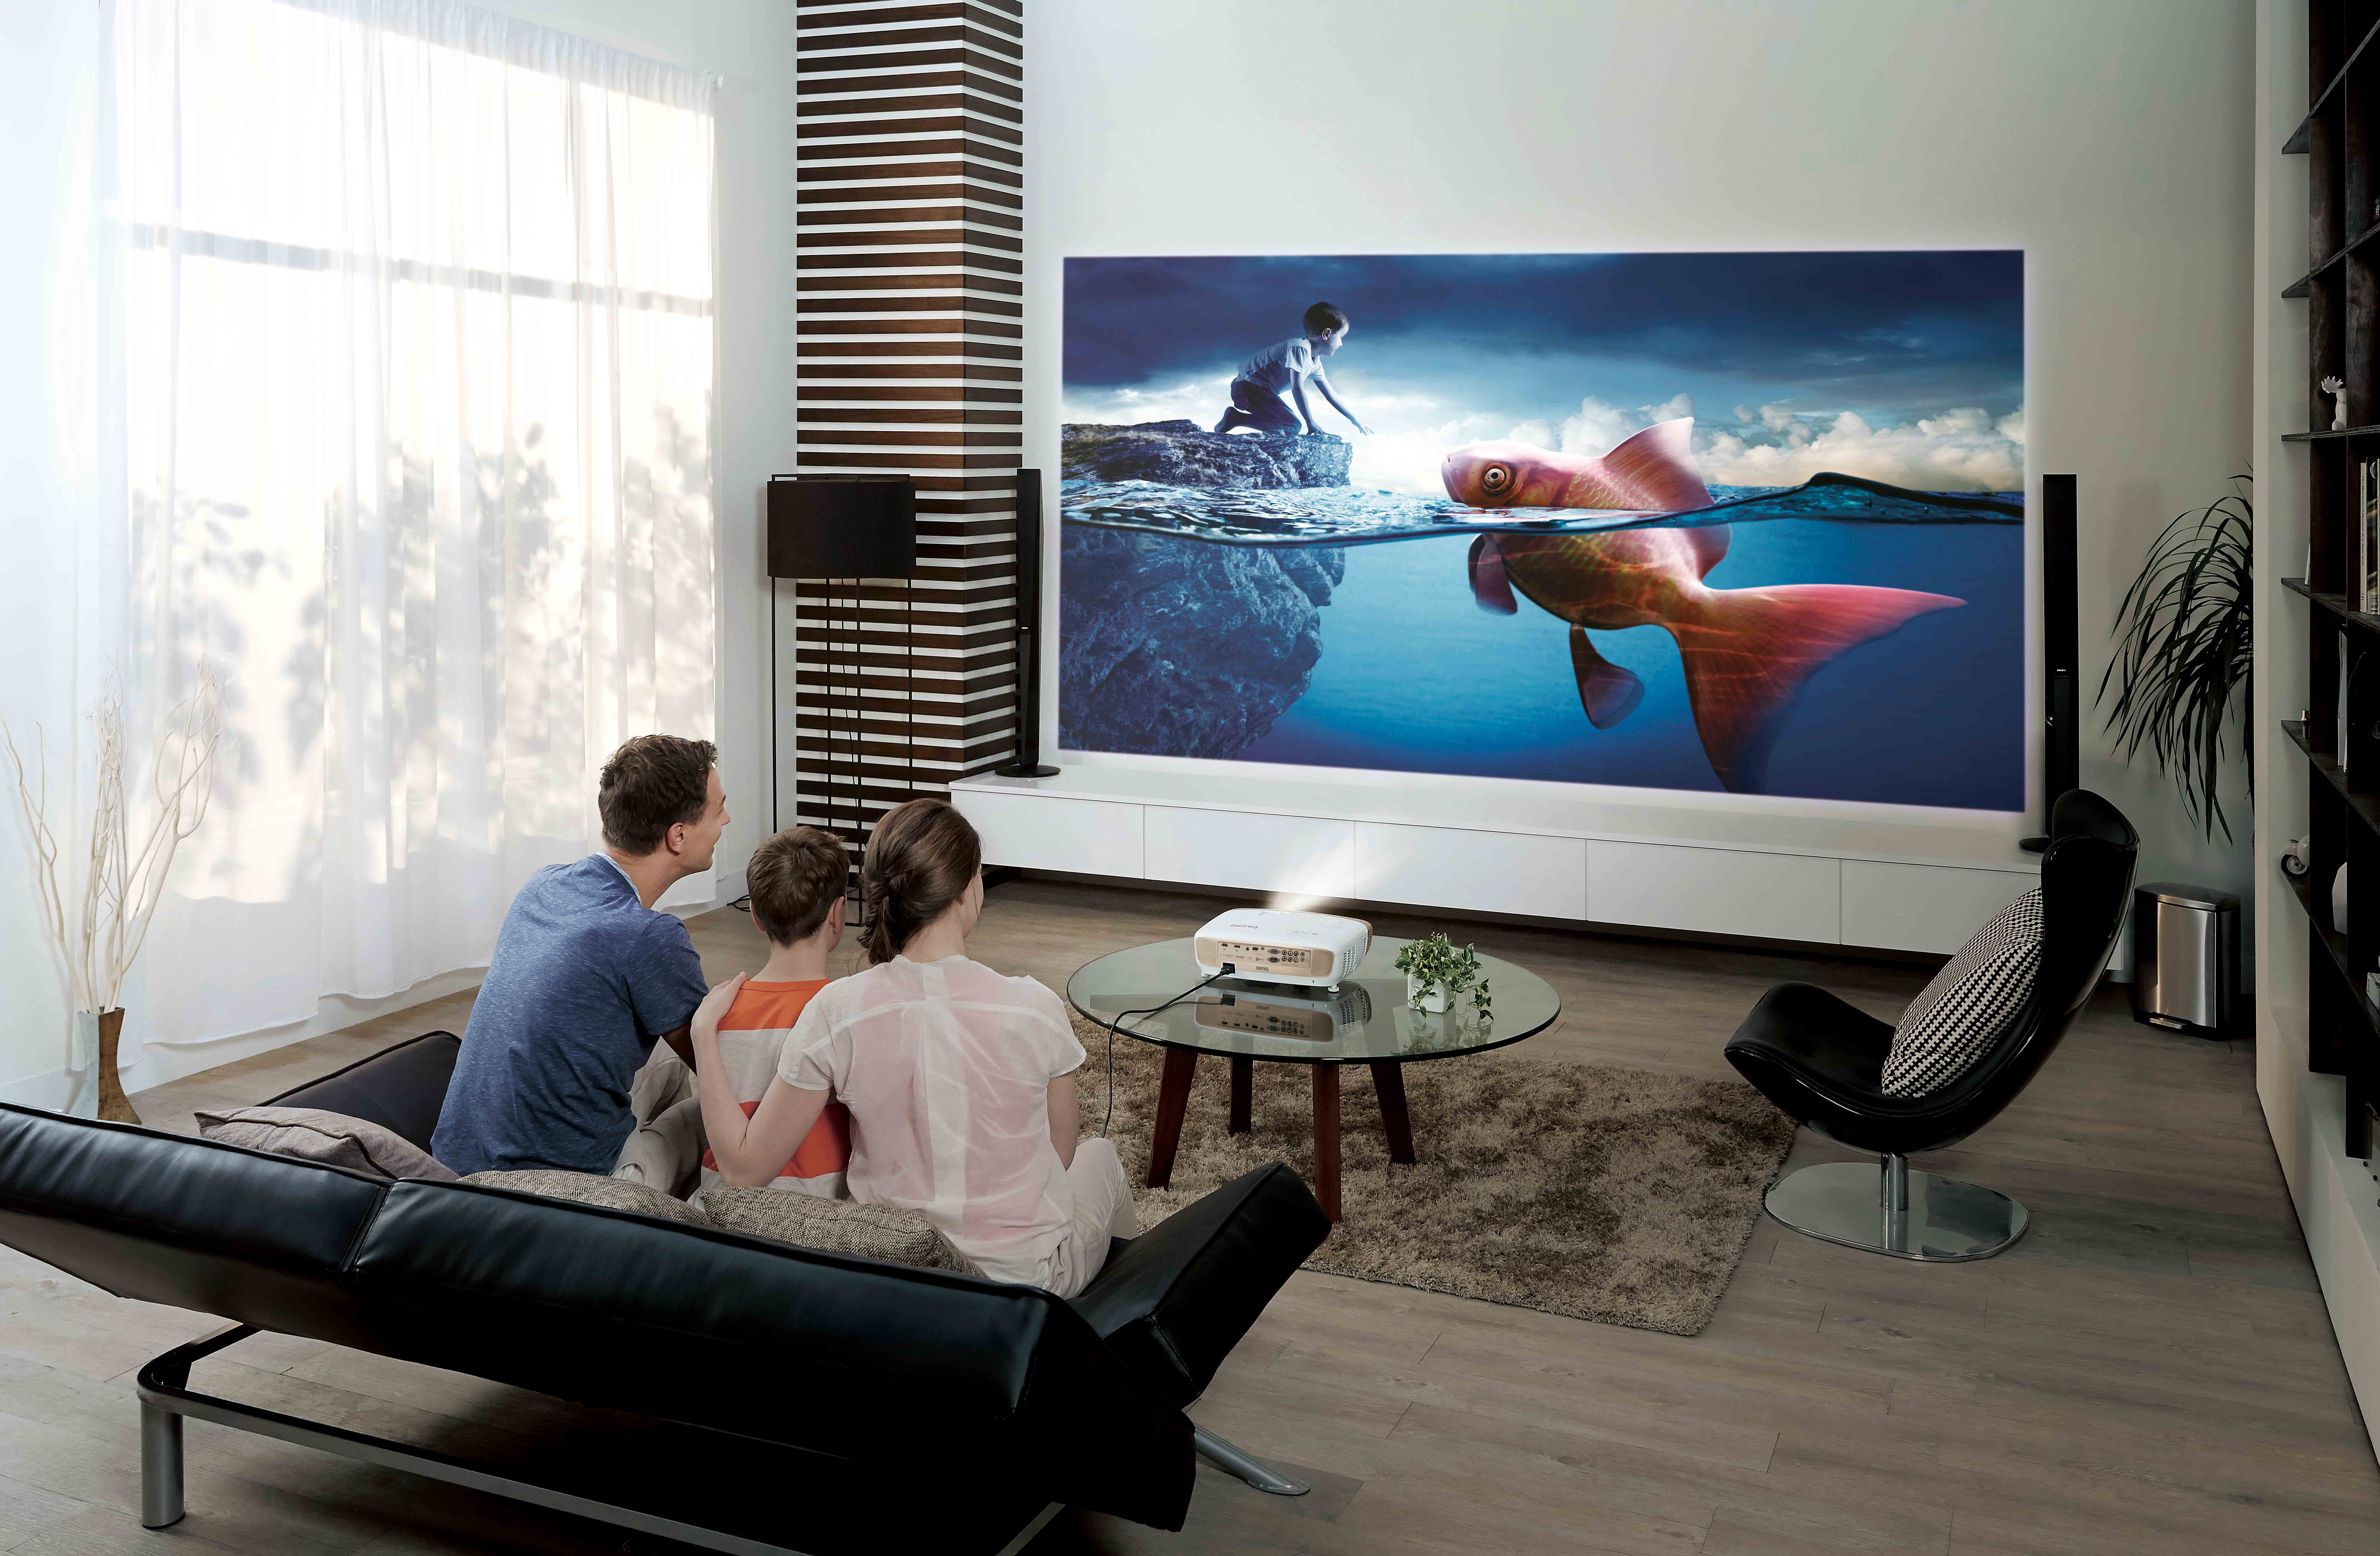 Просмотр на компьютере телевизор. Samsung 100 дюймов. Проектор Vivitek d853w. Домашний кинотеатр с проектором и экраном.